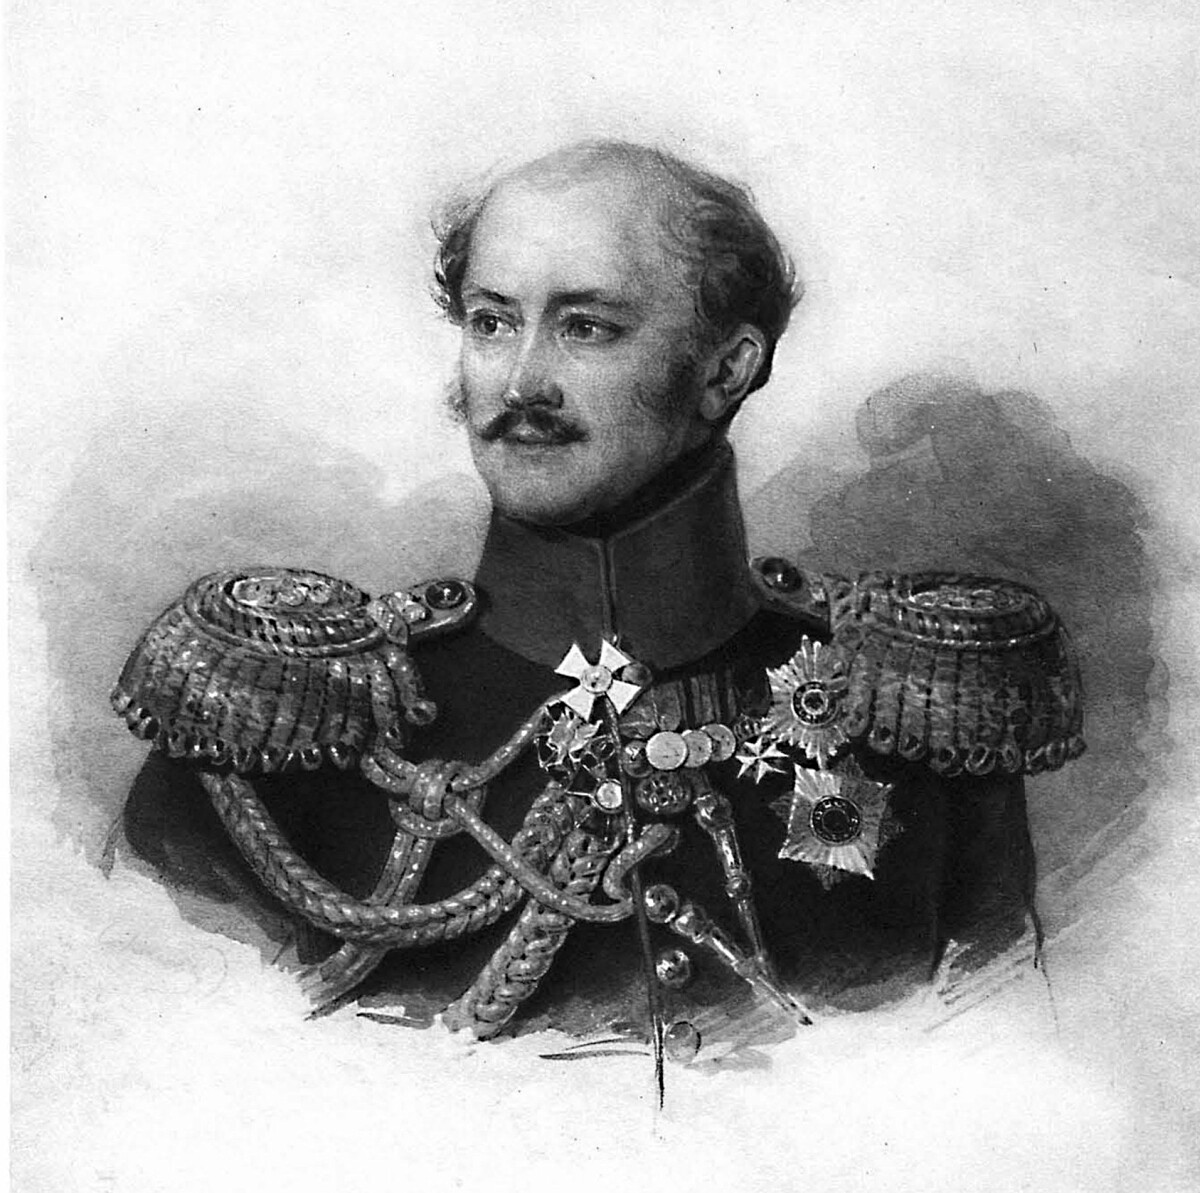 Il generale Alexander von Benckendorff, 1835

